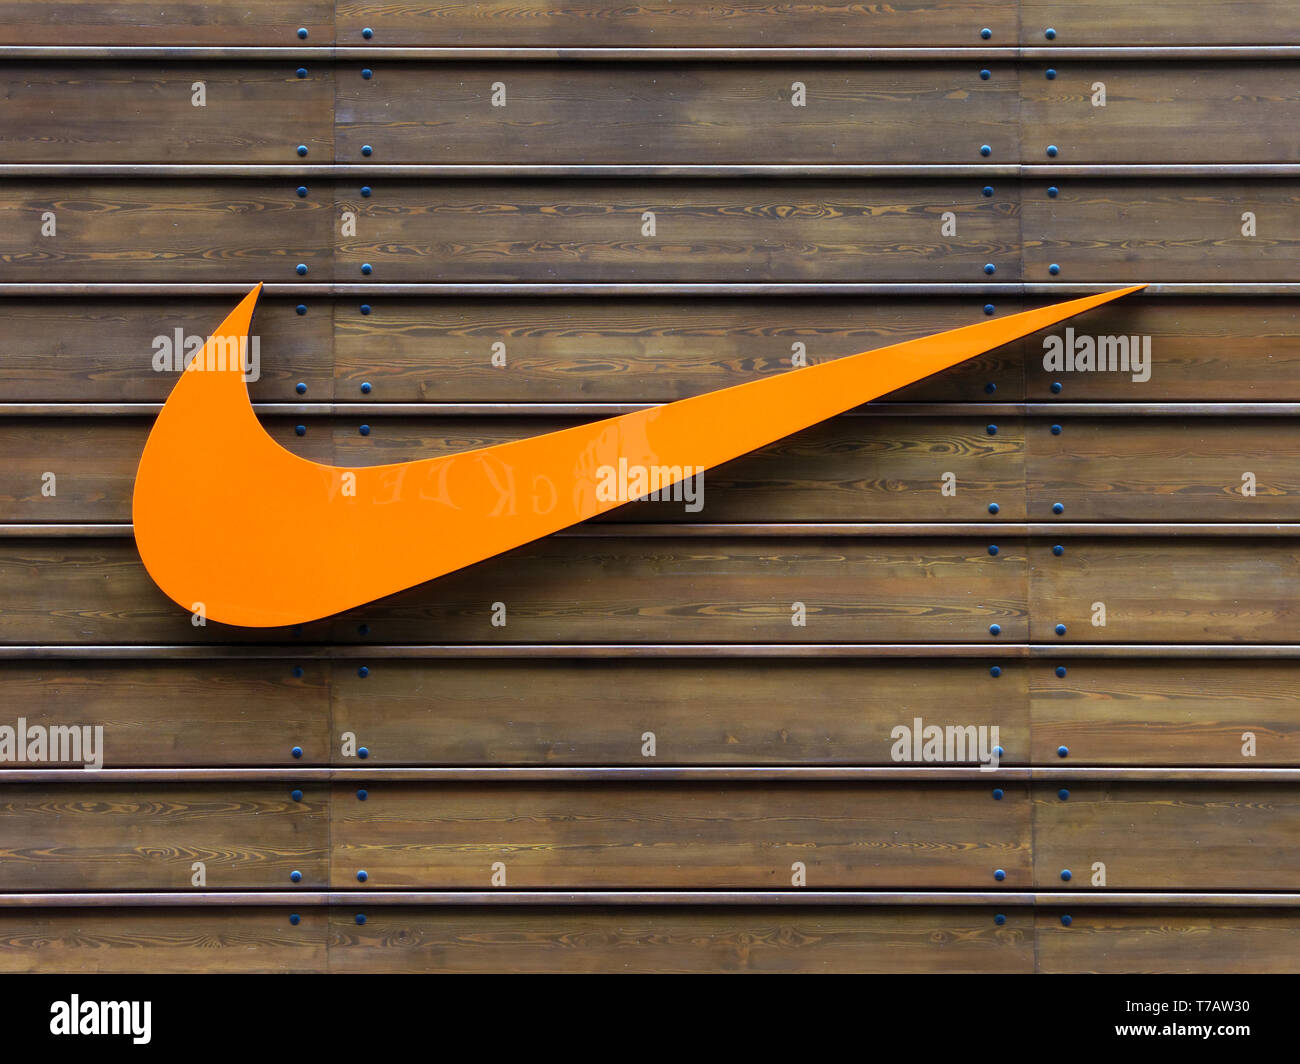 Londres, UK - CIRCA MAI 2012 : Orange logo Nike sur un mur en bois à la boutique Nike officiel au centre commercial Westfield Stratford. Banque D'Images